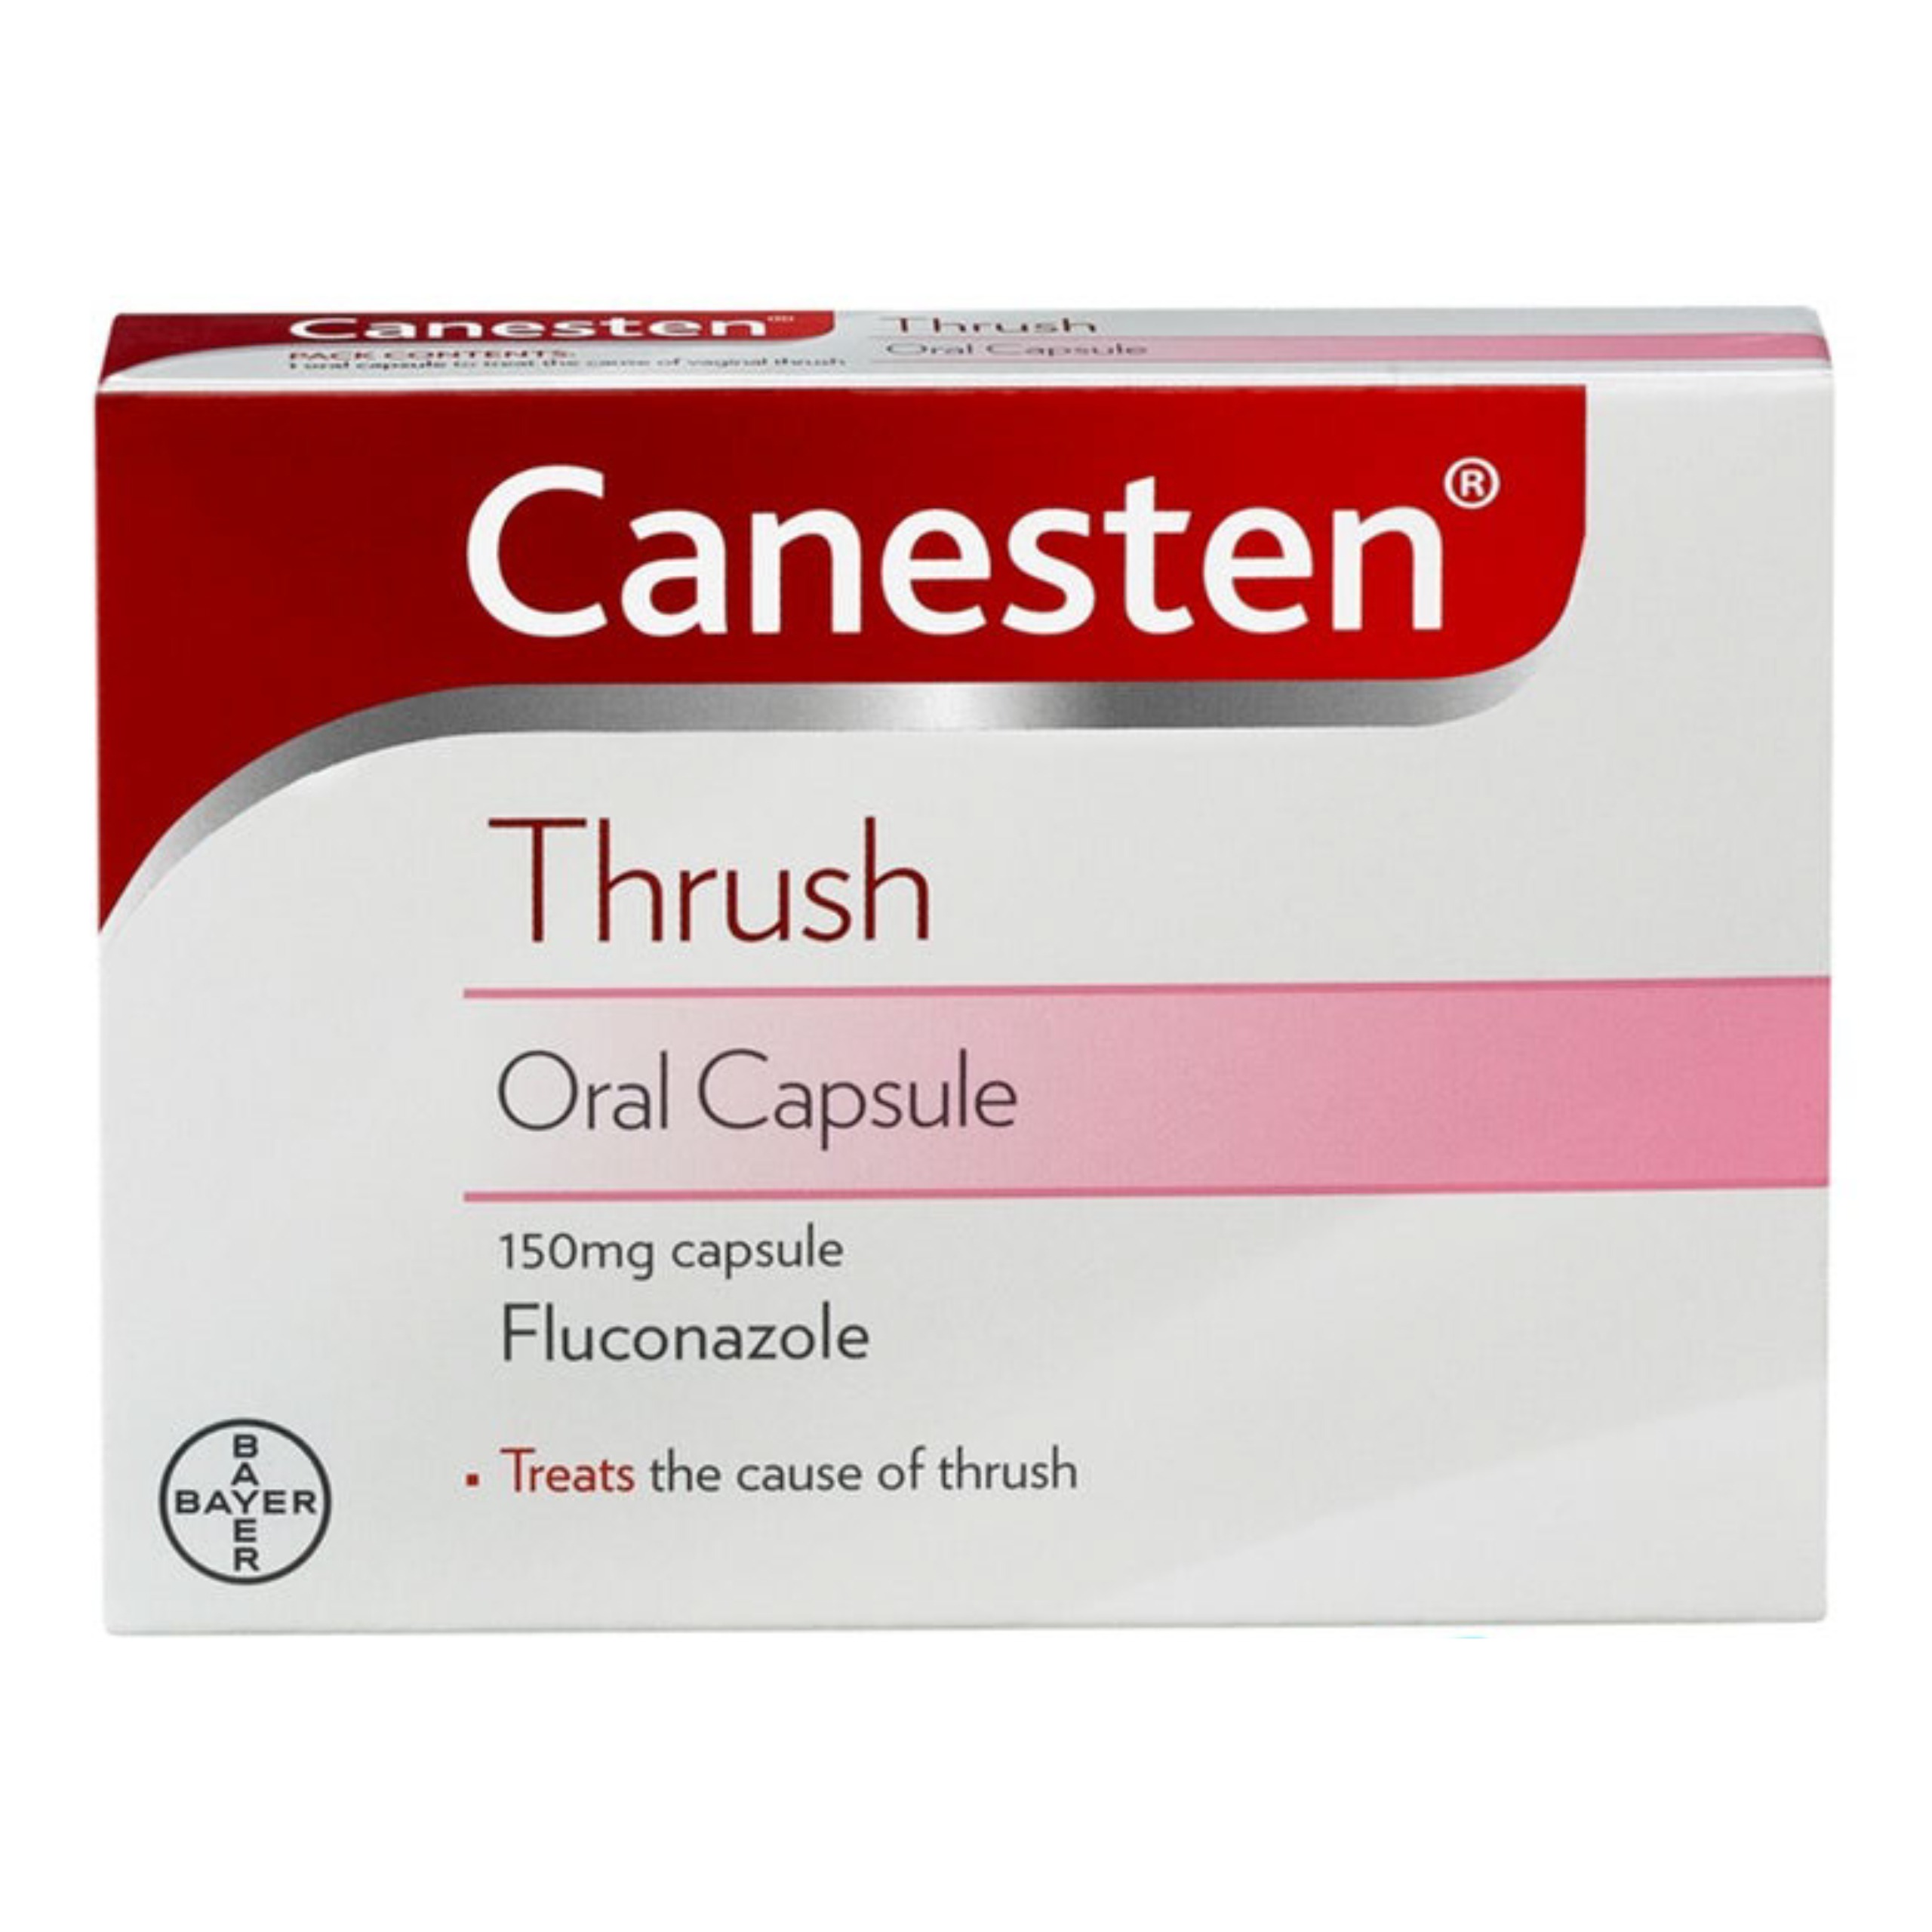 Canesten oral thrush capsules